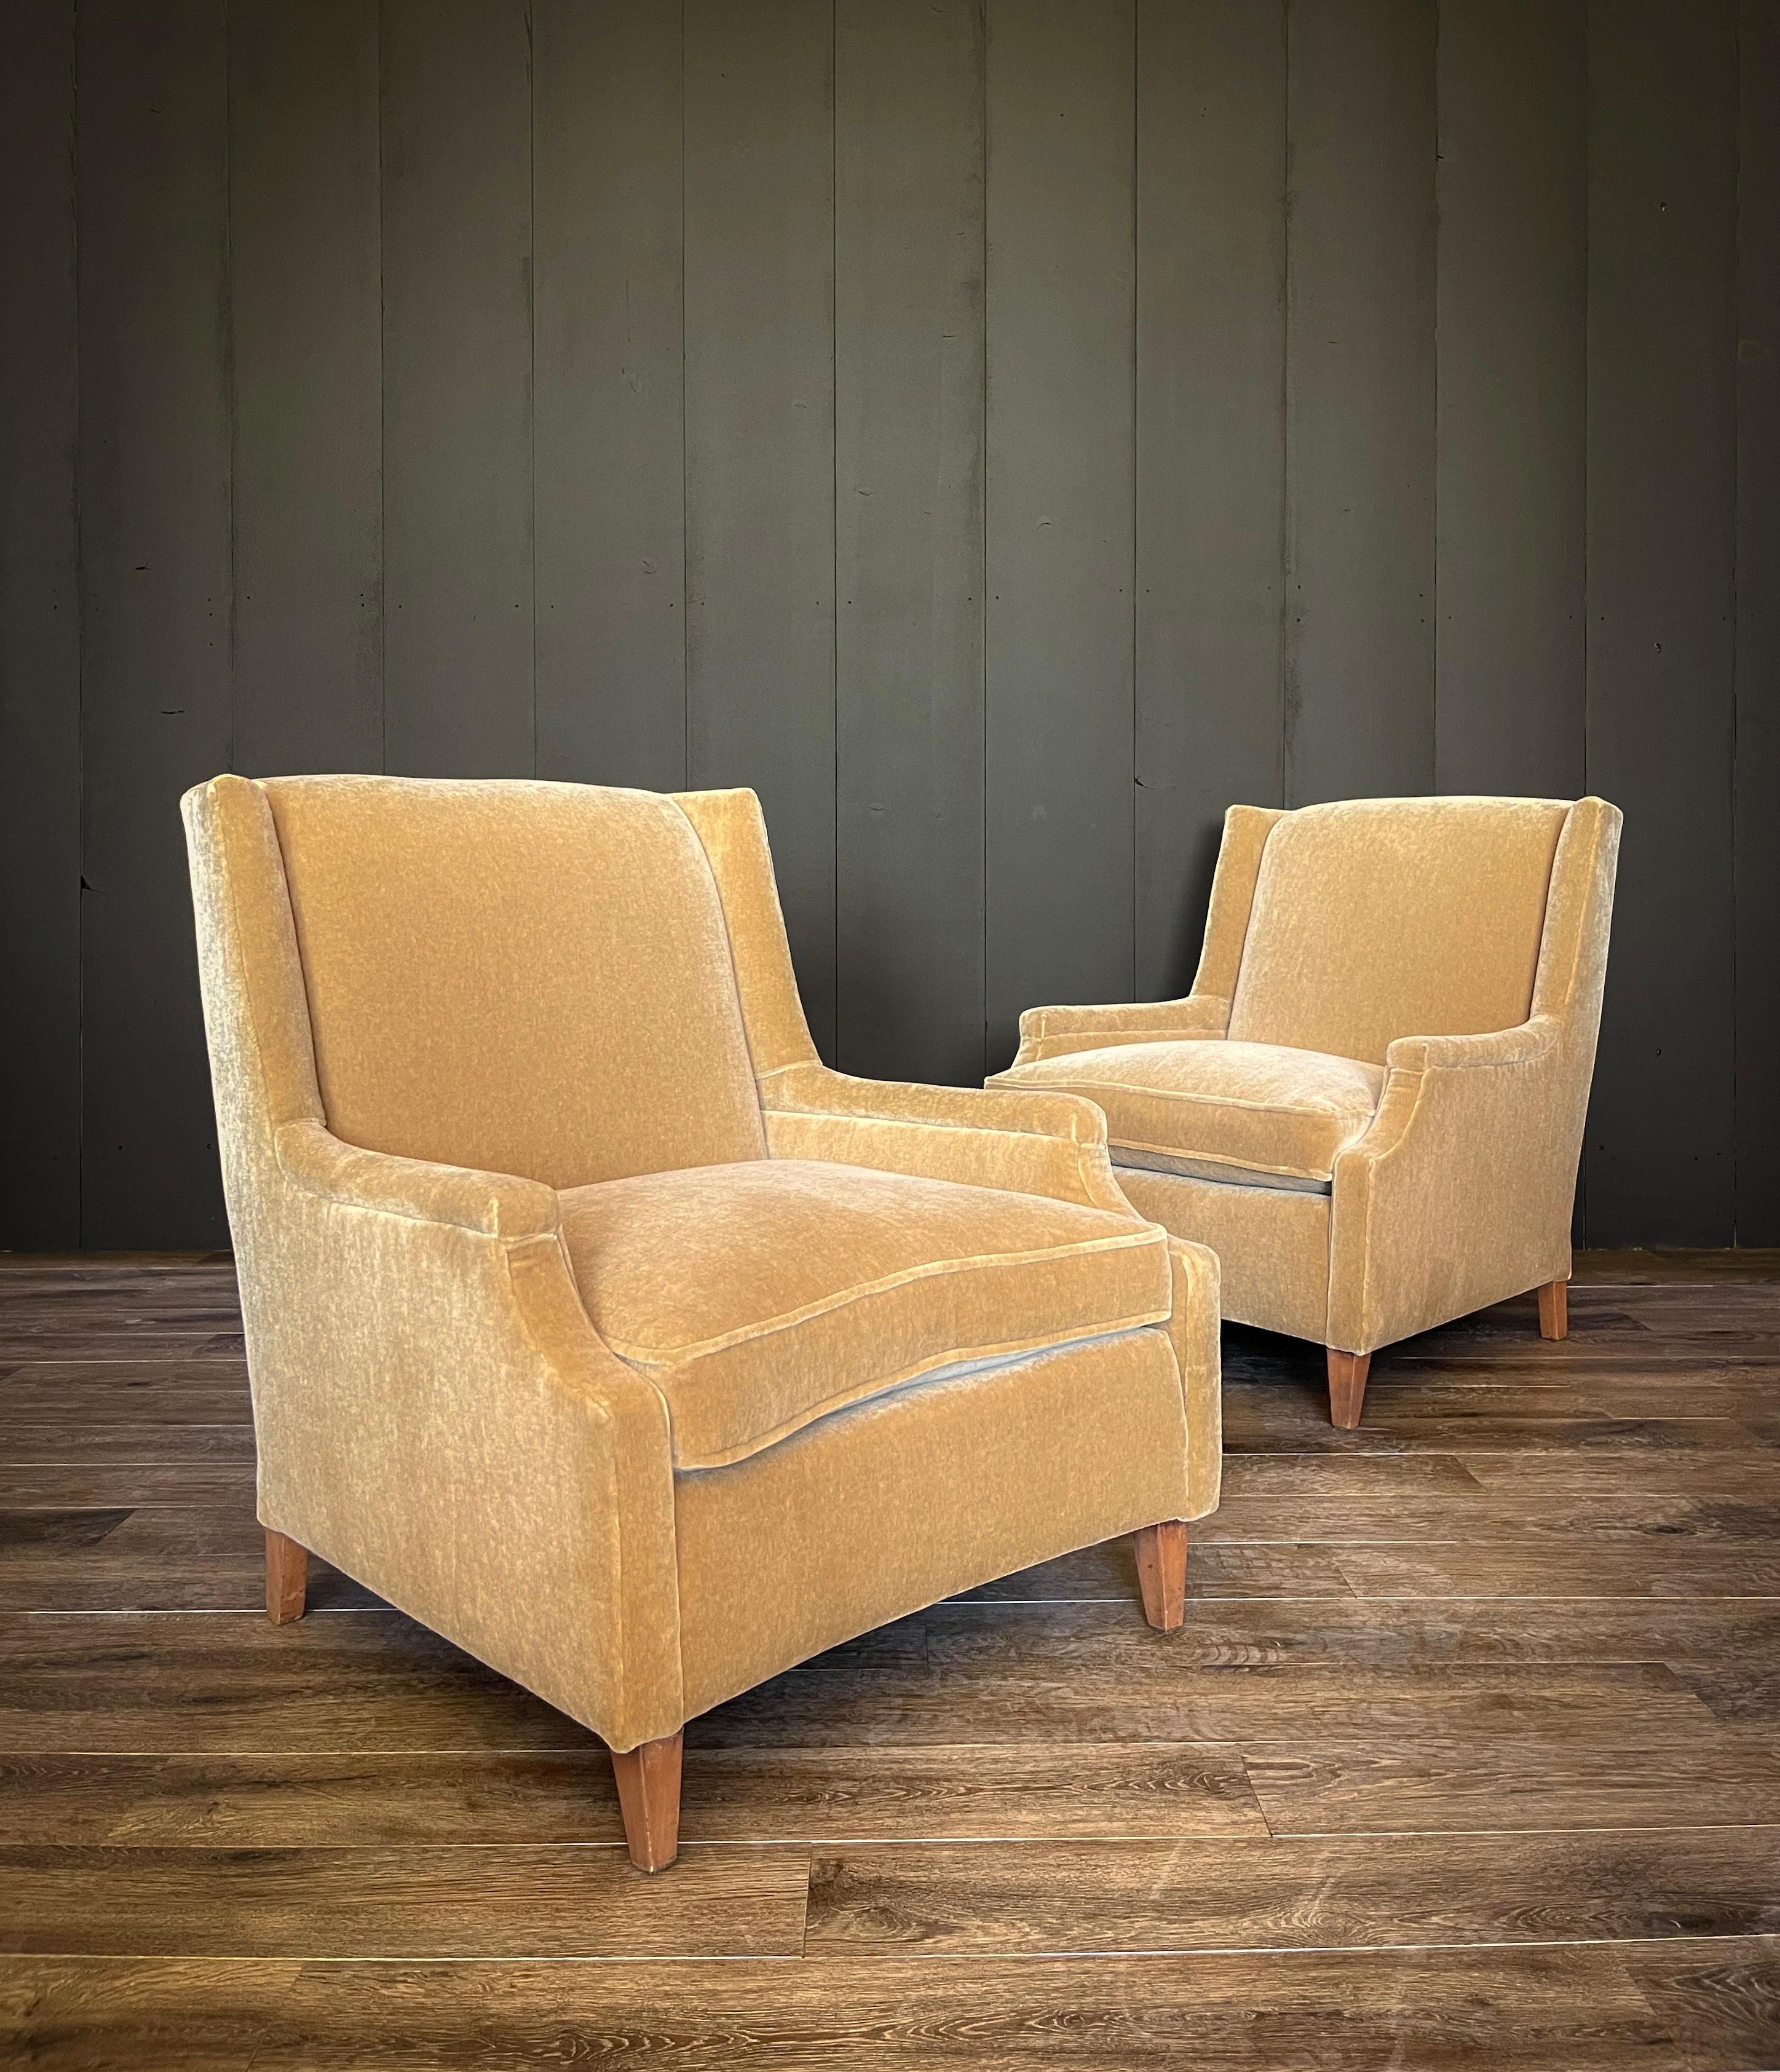 Laissez-vous aller à la nostalgie de la sophistication du milieu du siècle avec cette superbe paire de chaises Vintage Mohair de couleur camel, rappelant l'époque emblématique de 